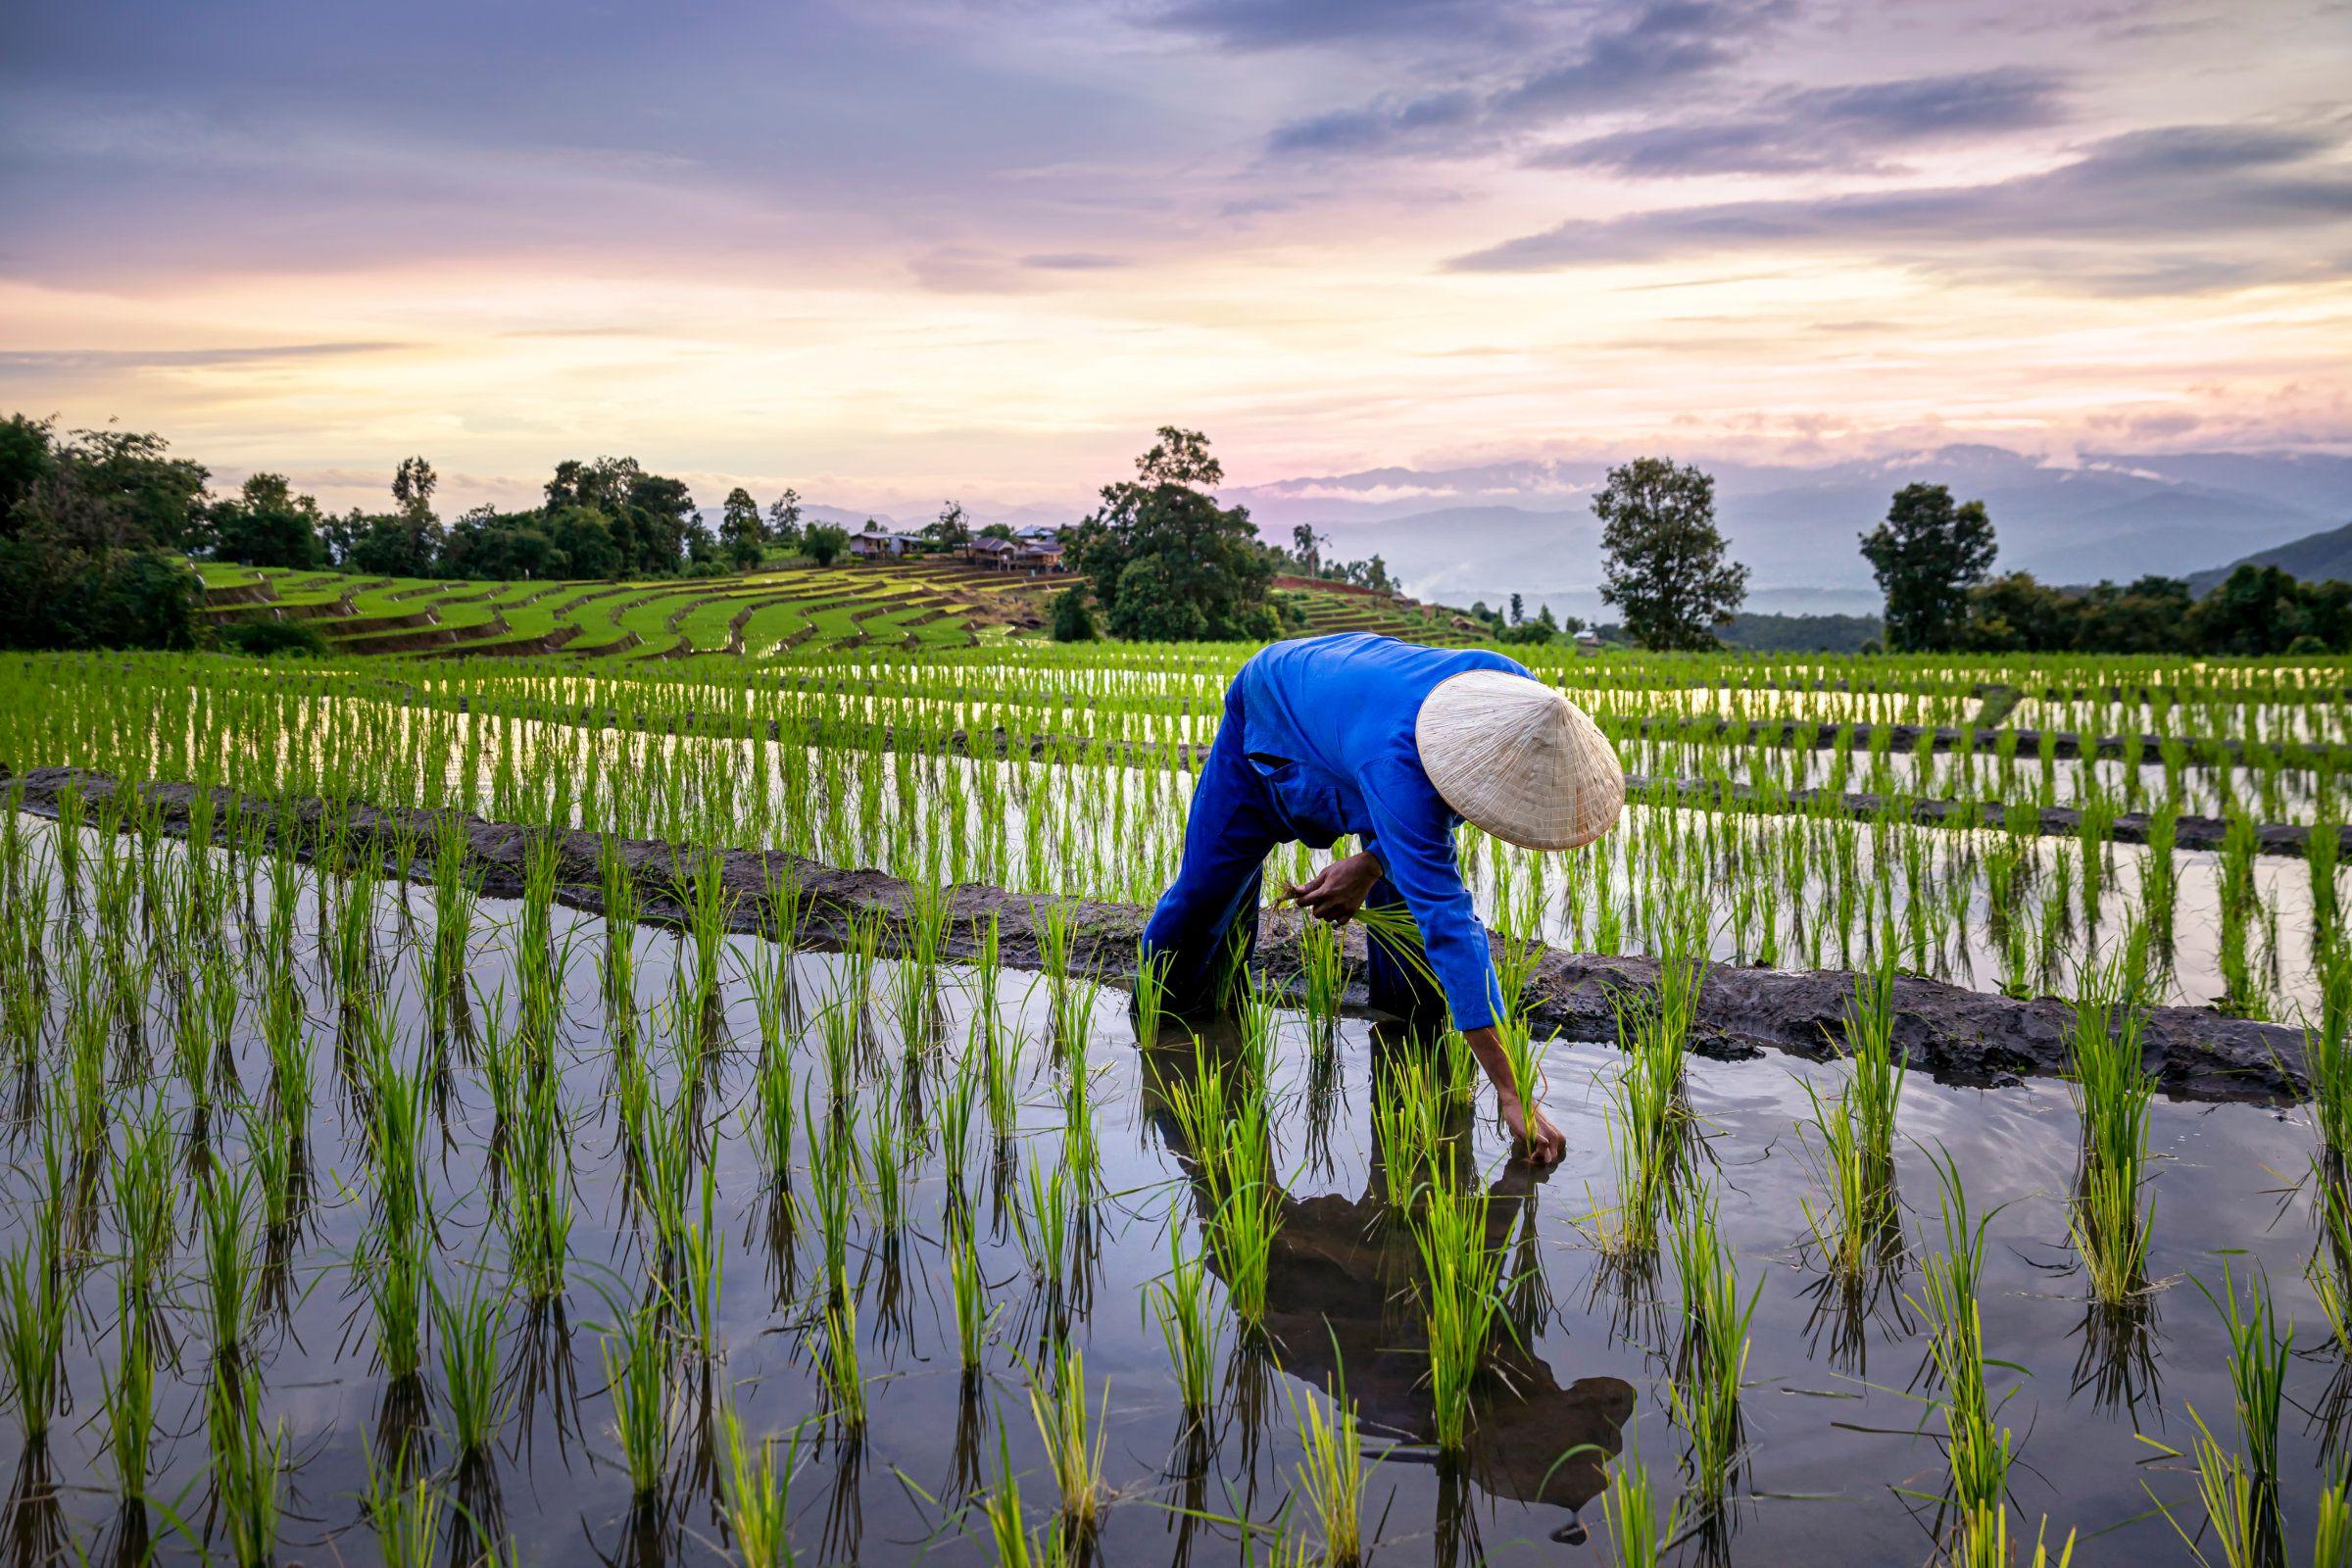 indonesia-china siapkan proyek satu juta hektare sawah di kalteng - 'hanya menghamburkan uang,' kata pengamat